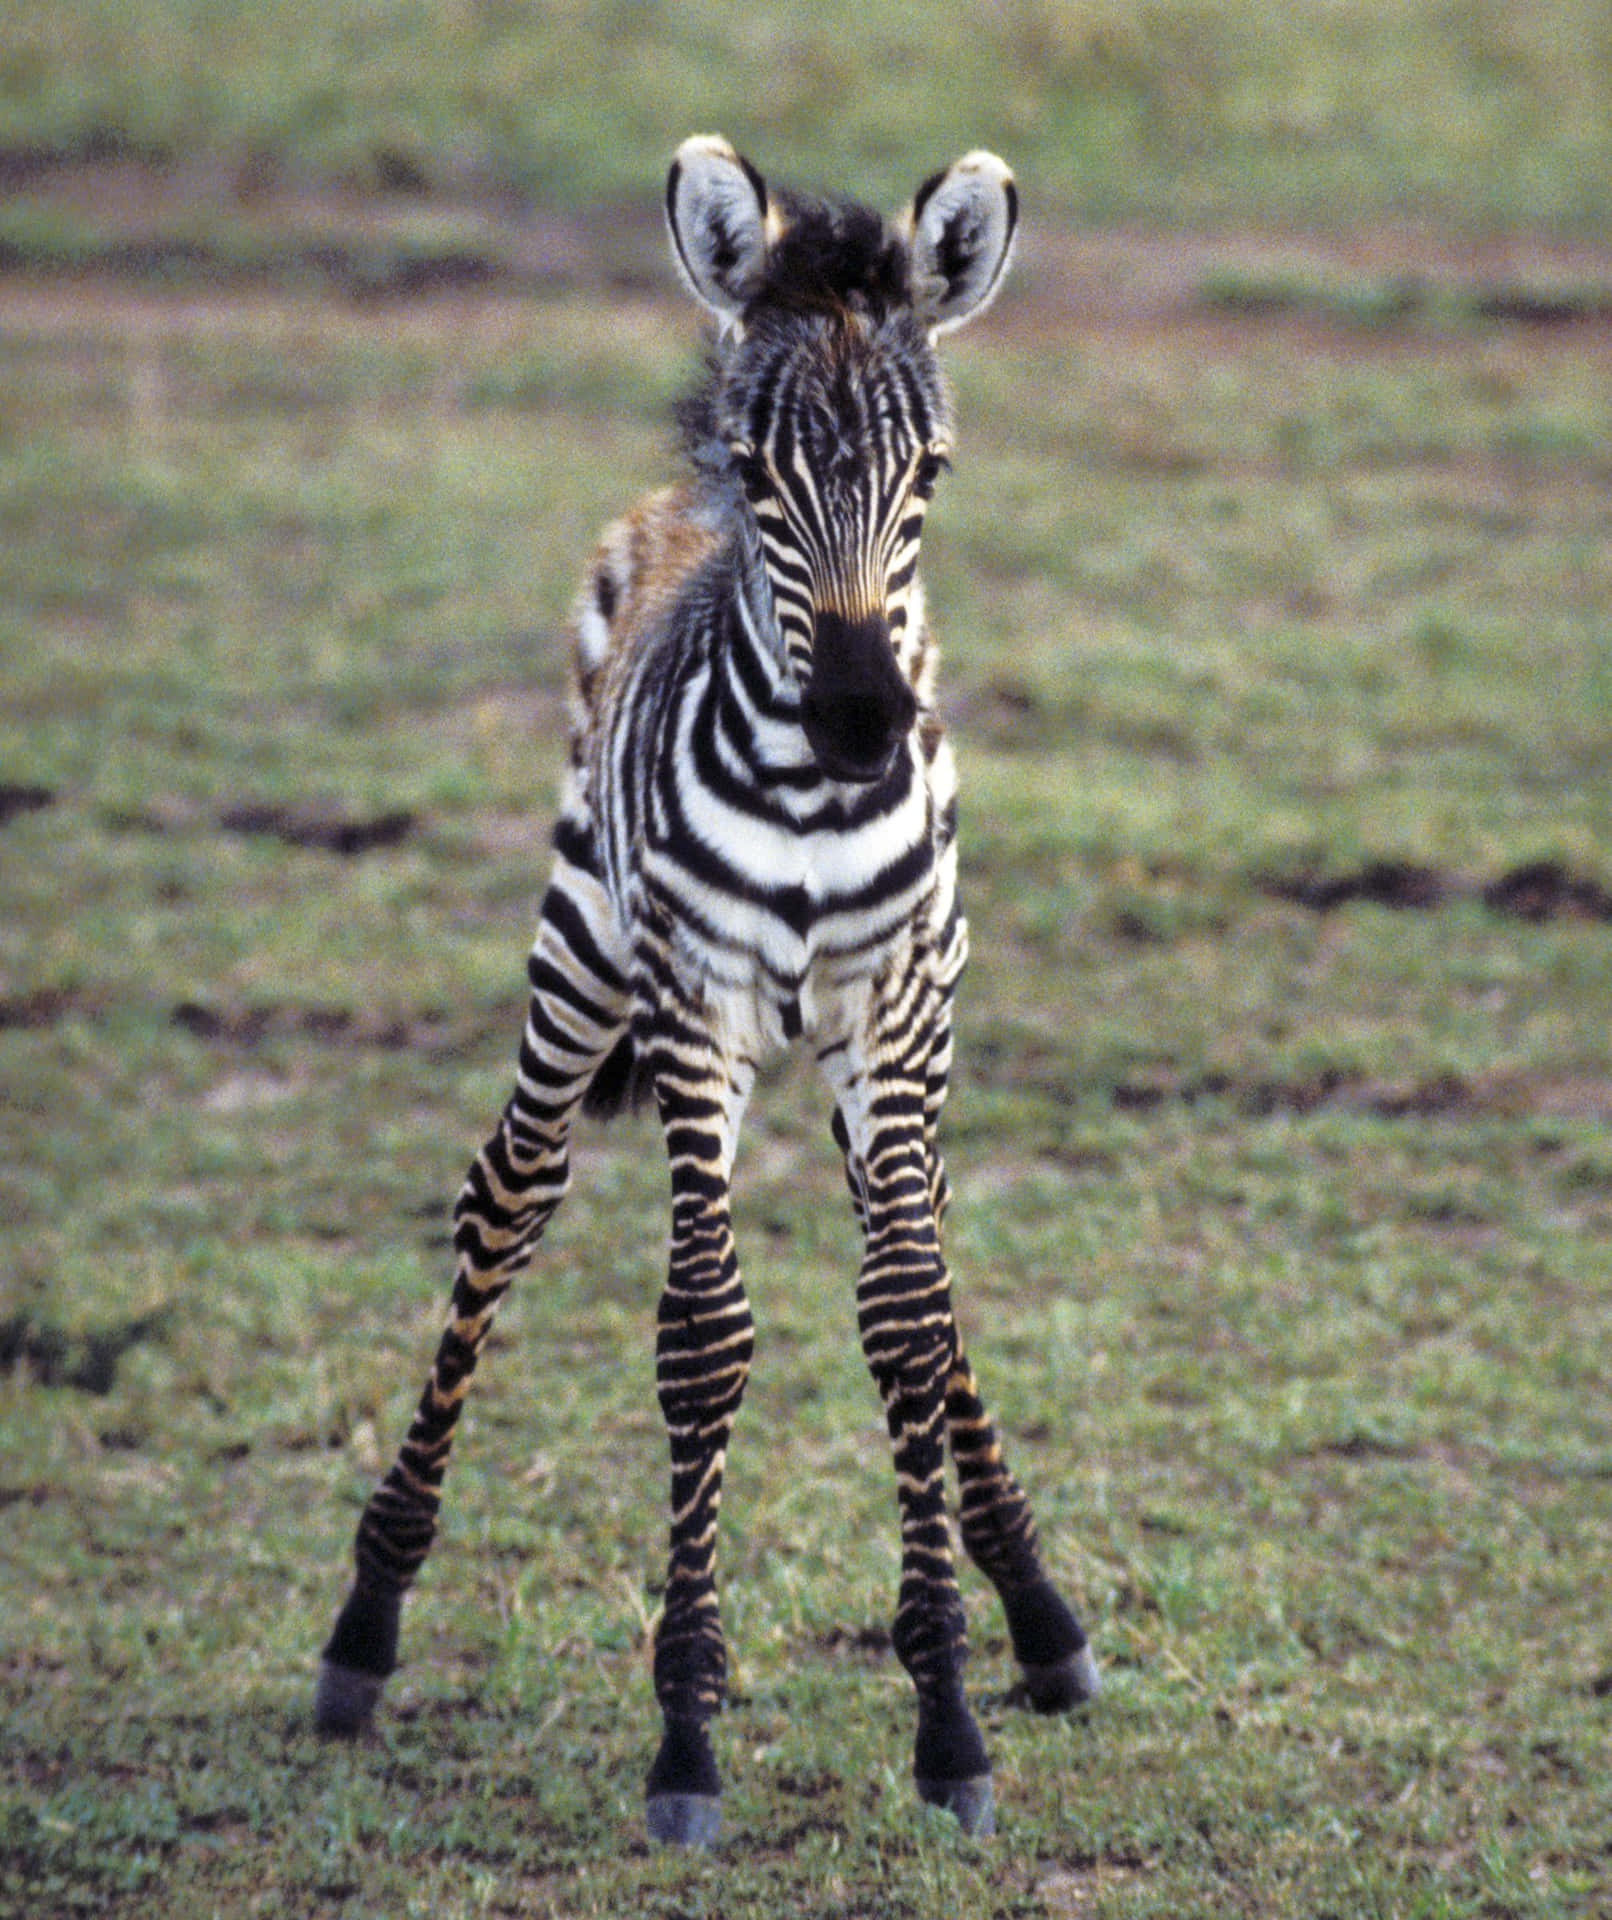 Taget Kig På Denne Smukke Zebra Fanget I Naturen.